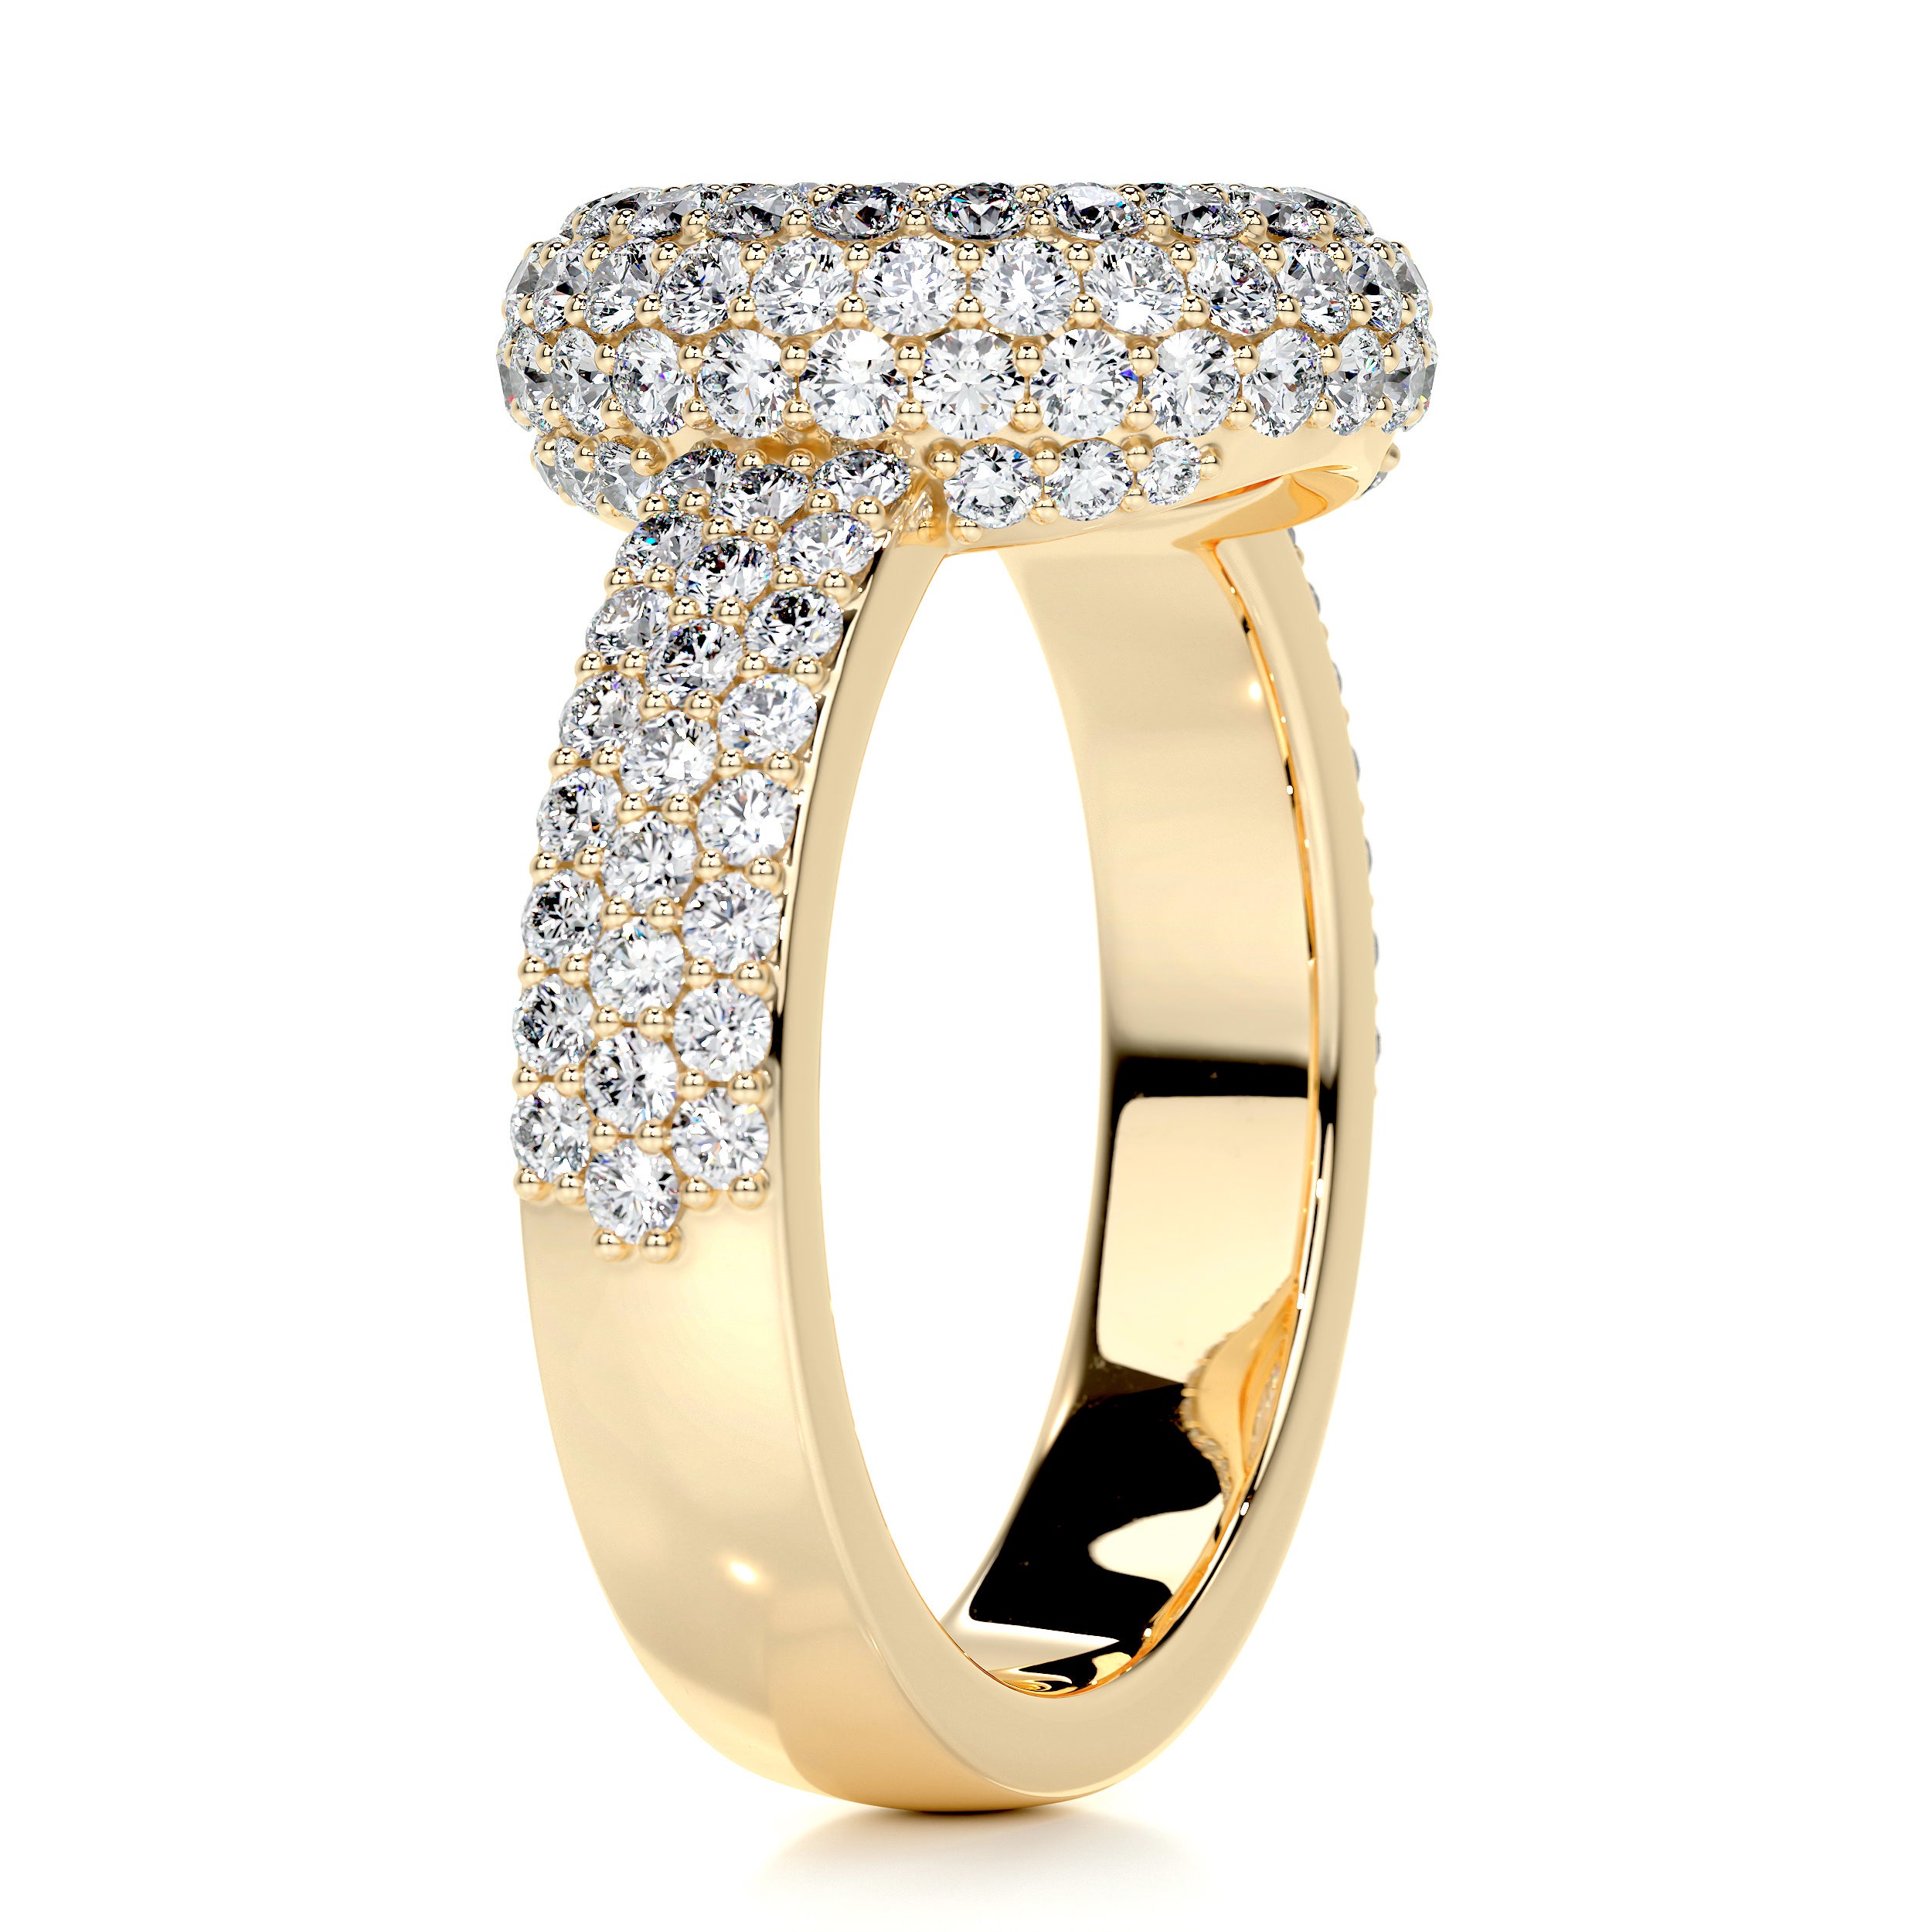 Reagan Diamond Engagement Ring -18K Yellow Gold